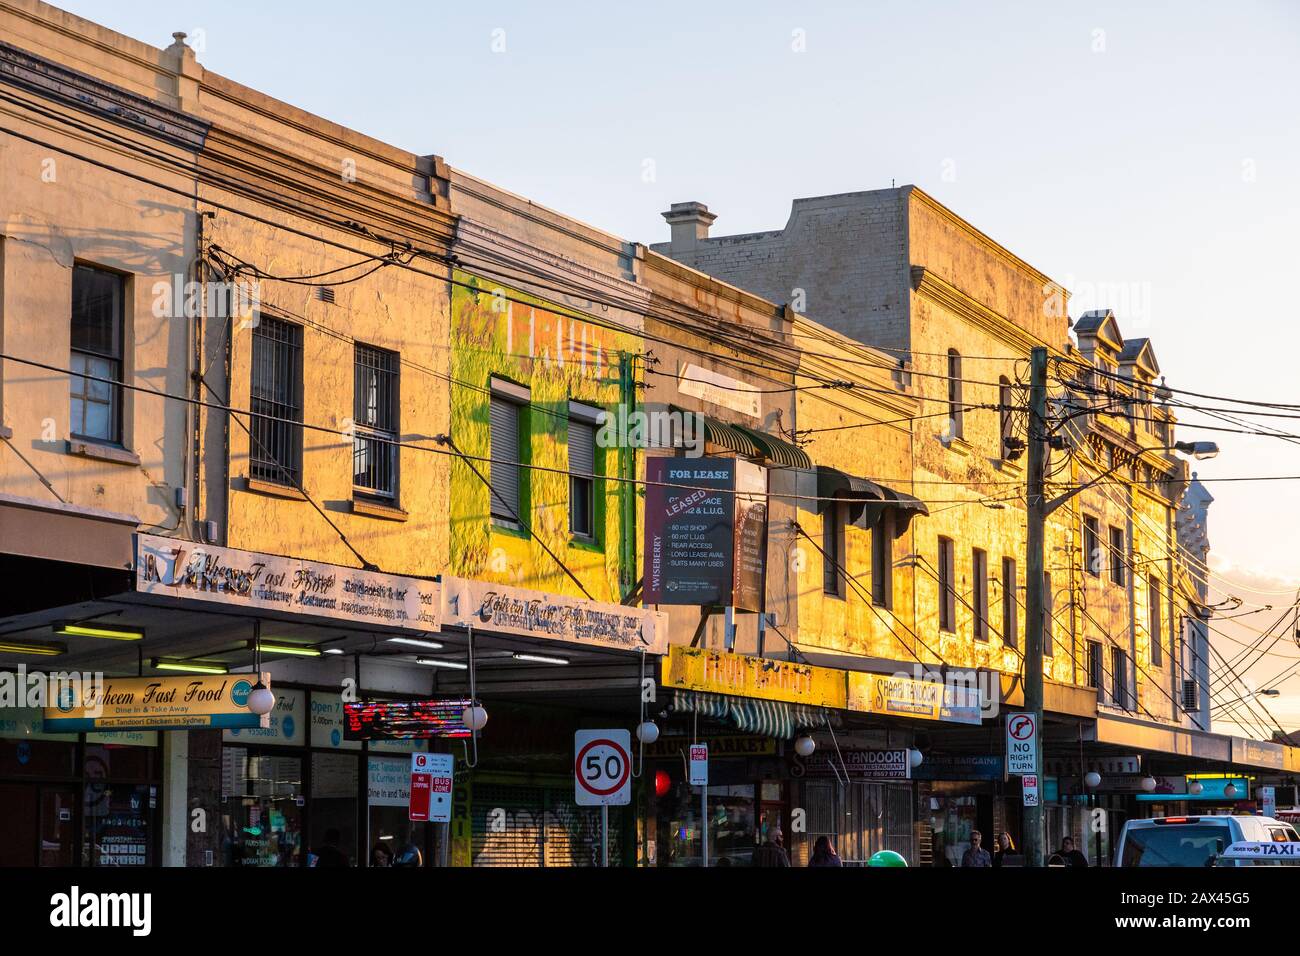 Sydney, Australia - 27 oct 2018: Sunset light on Newtown buildings Stock Photo